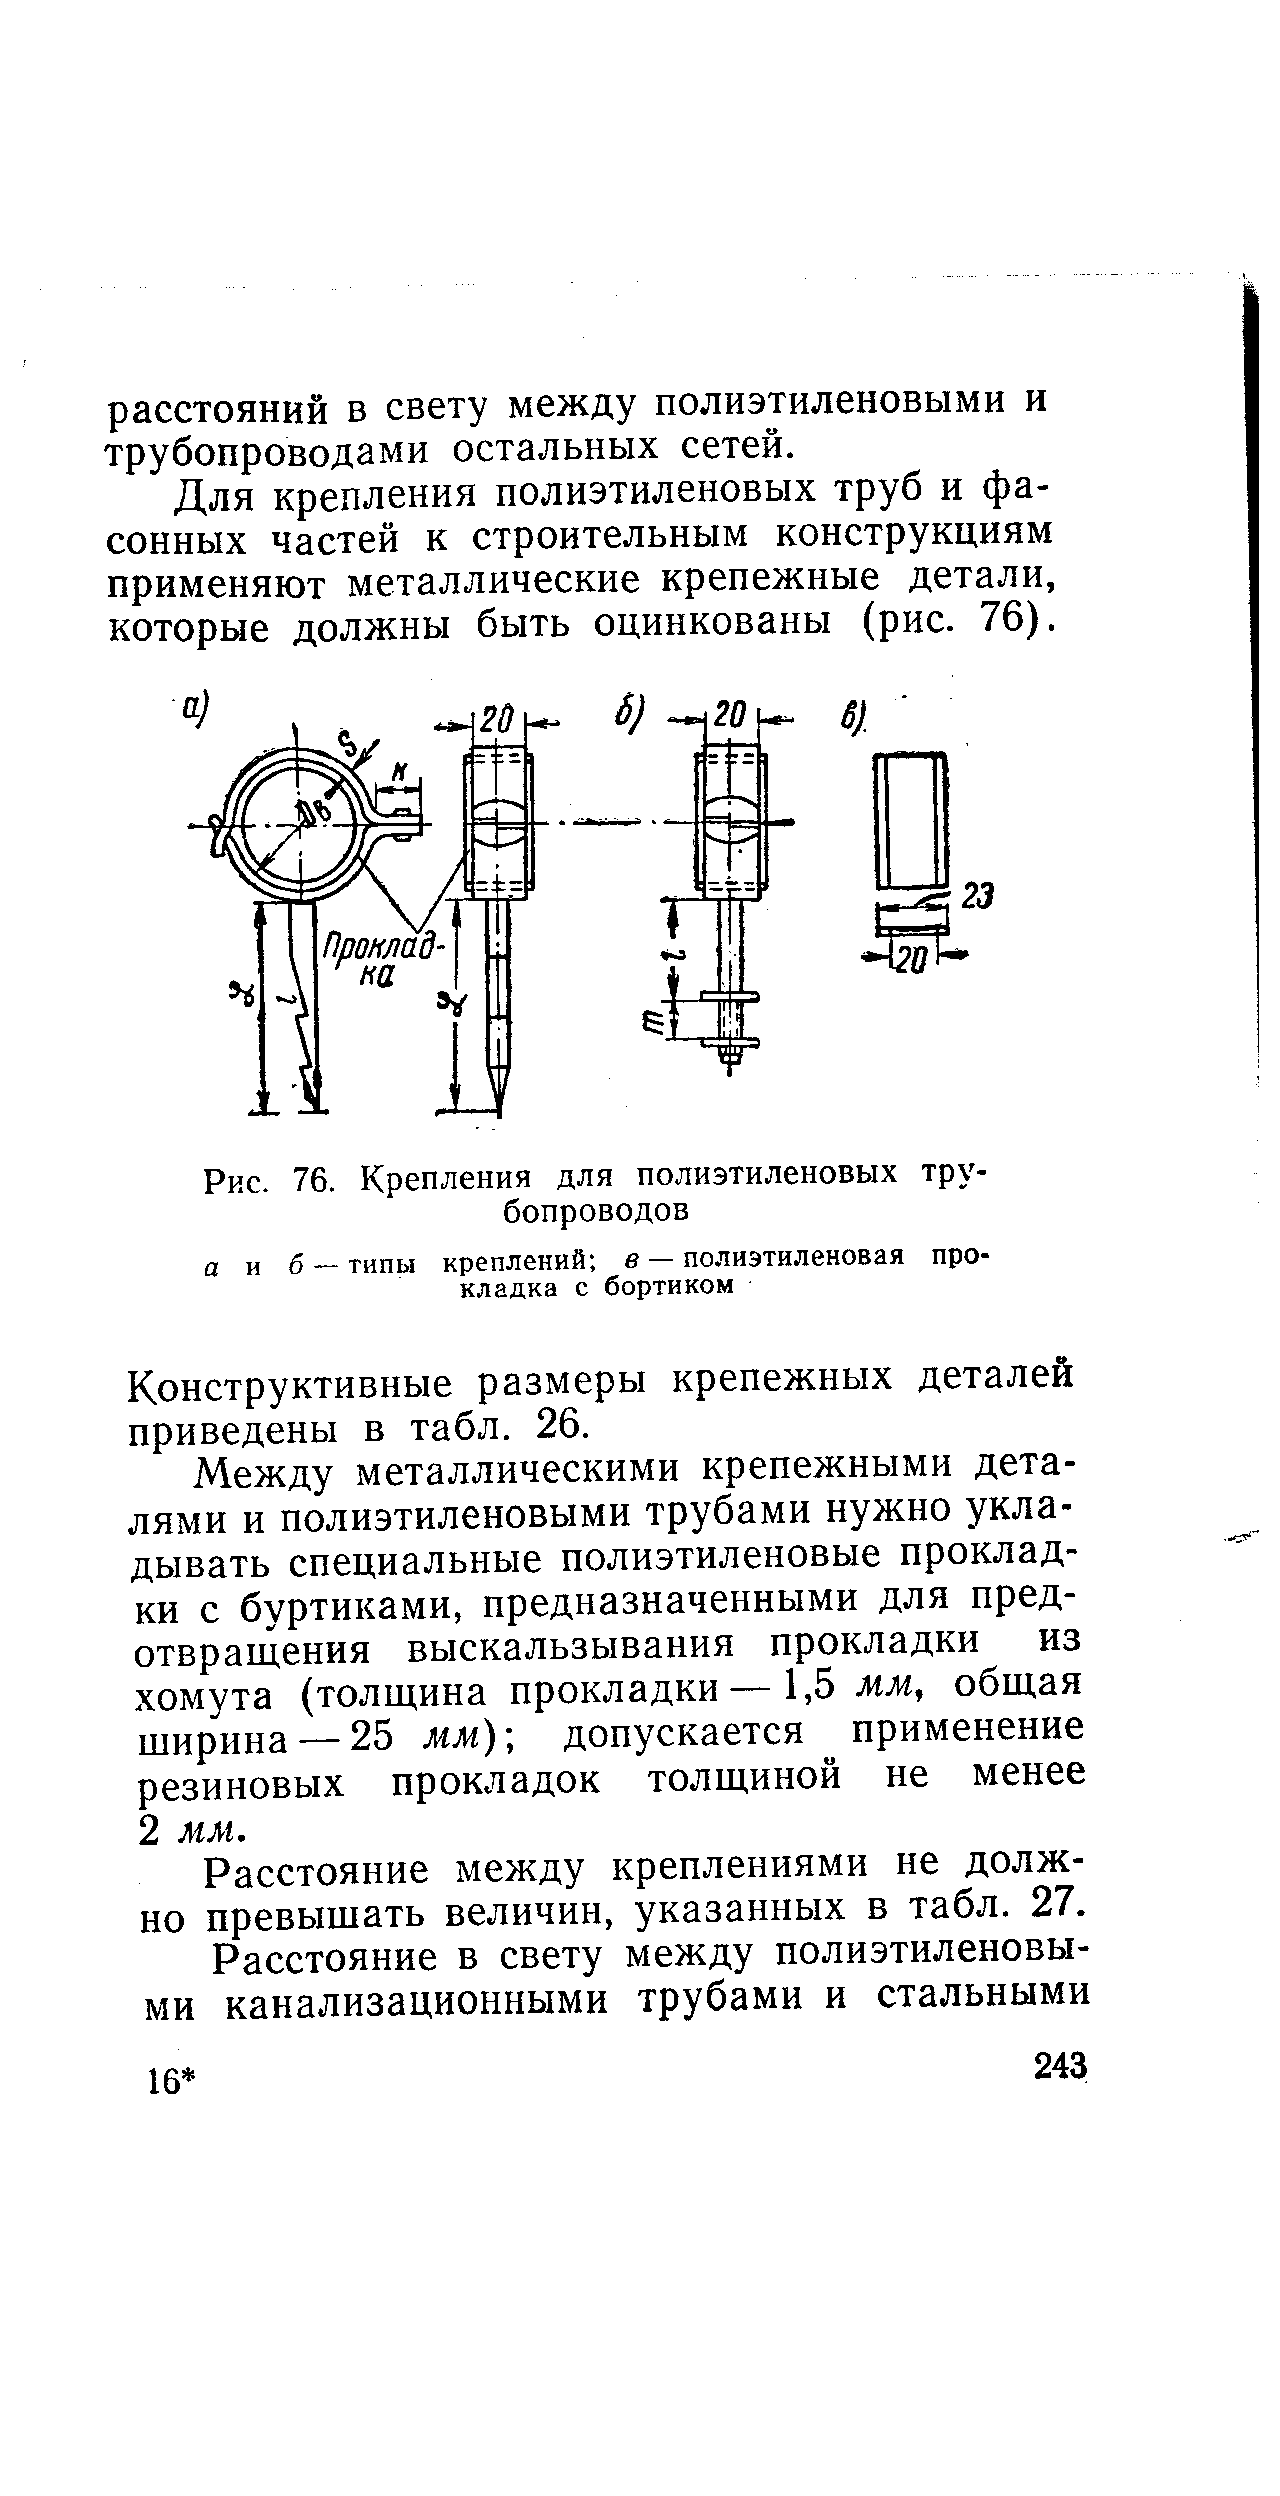 Рис. 76. Крепления для полиэтиленовых трубопроводов
